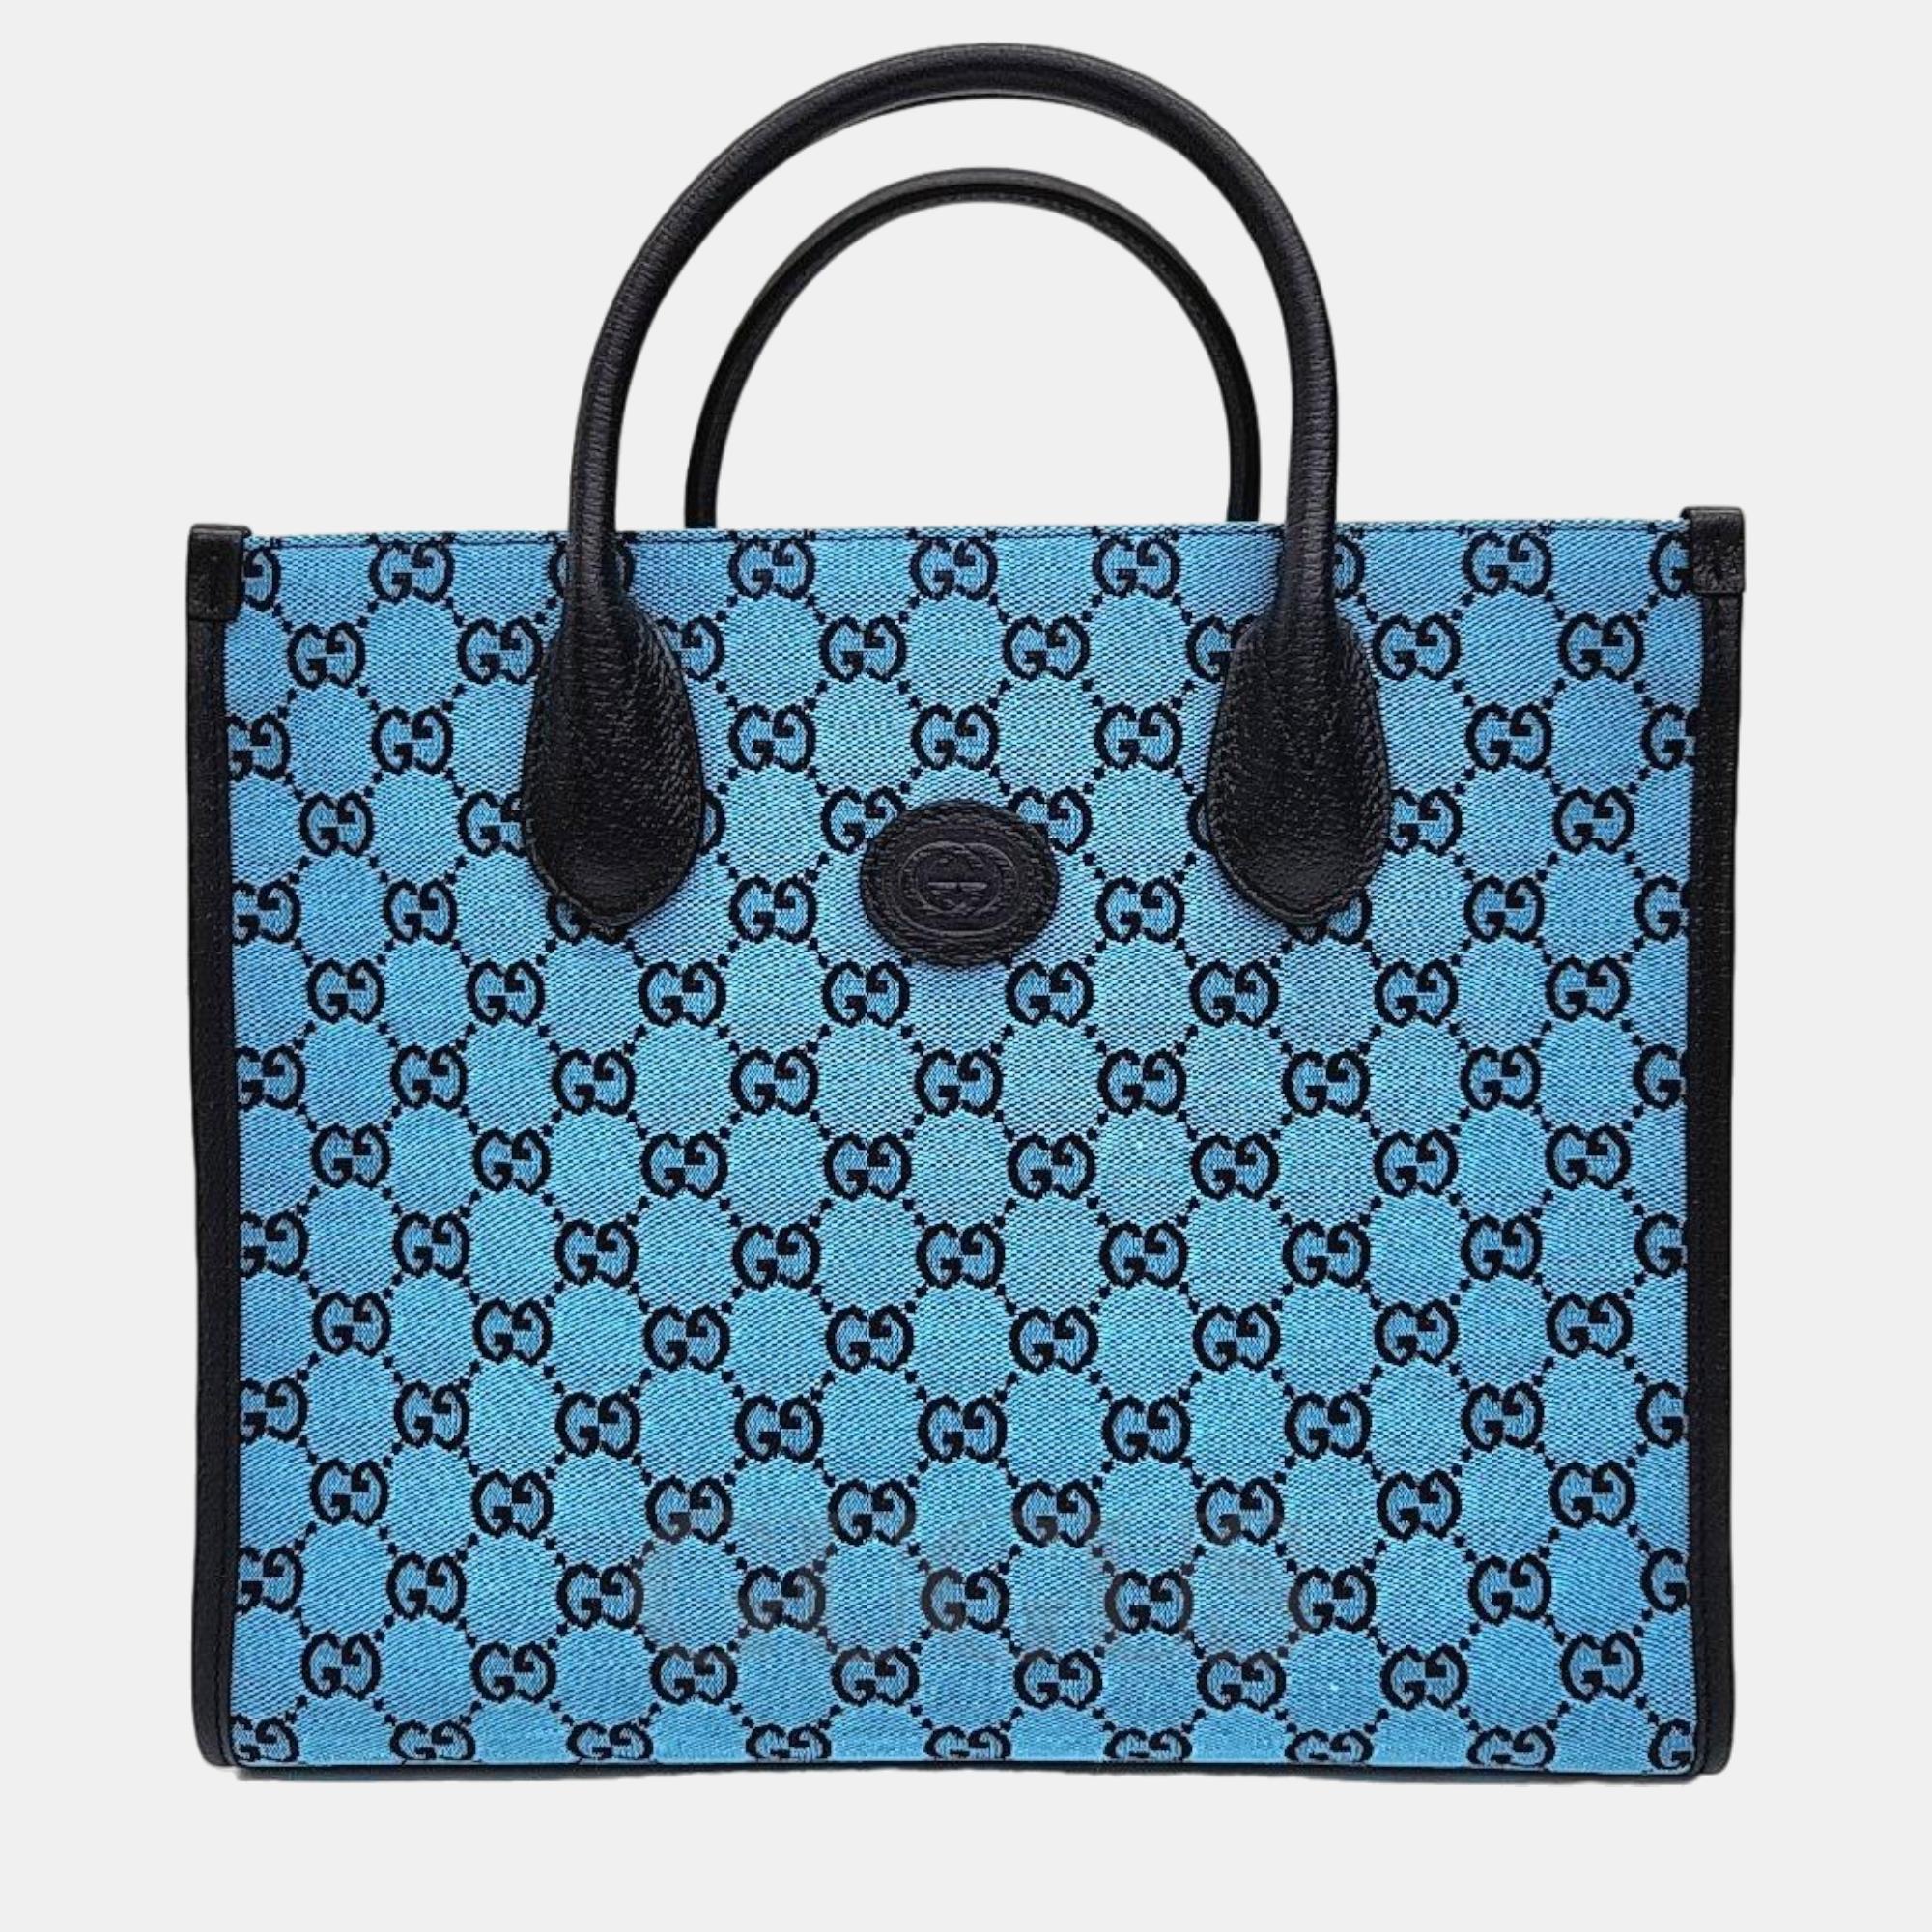 Gucci blue gg canvas small tote bag